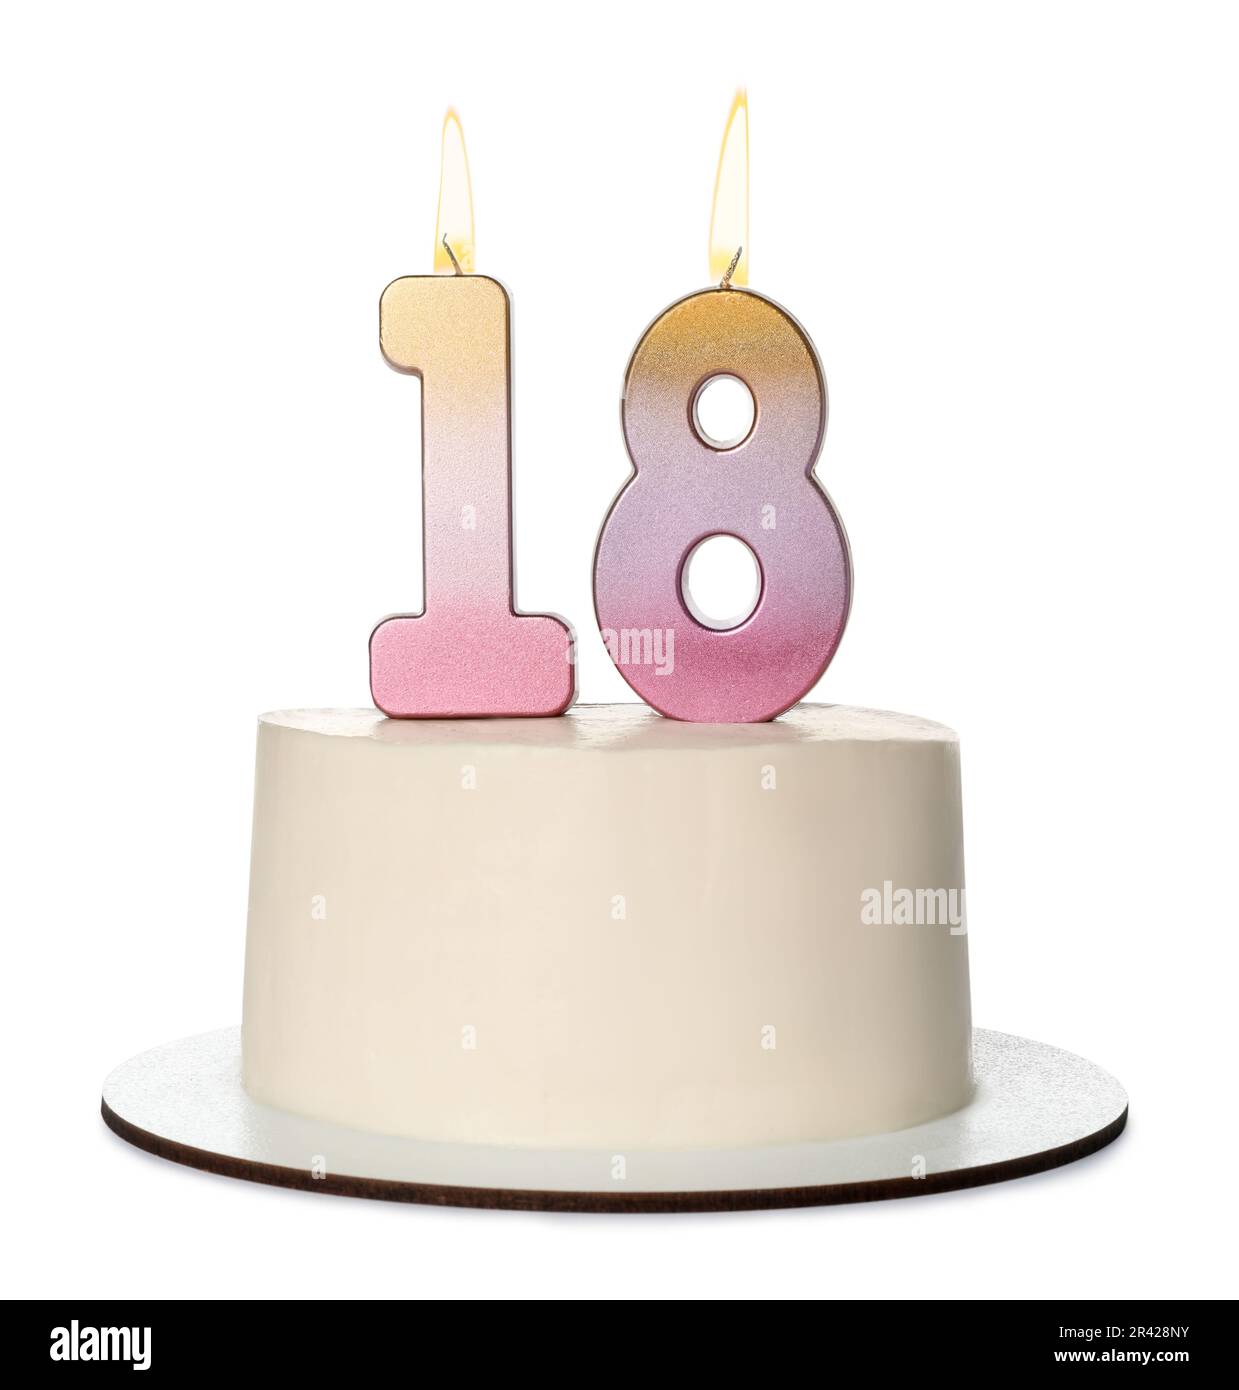 Velas de Cumpleaños 18, Velas de Pastel de Cumpleaños - Cake